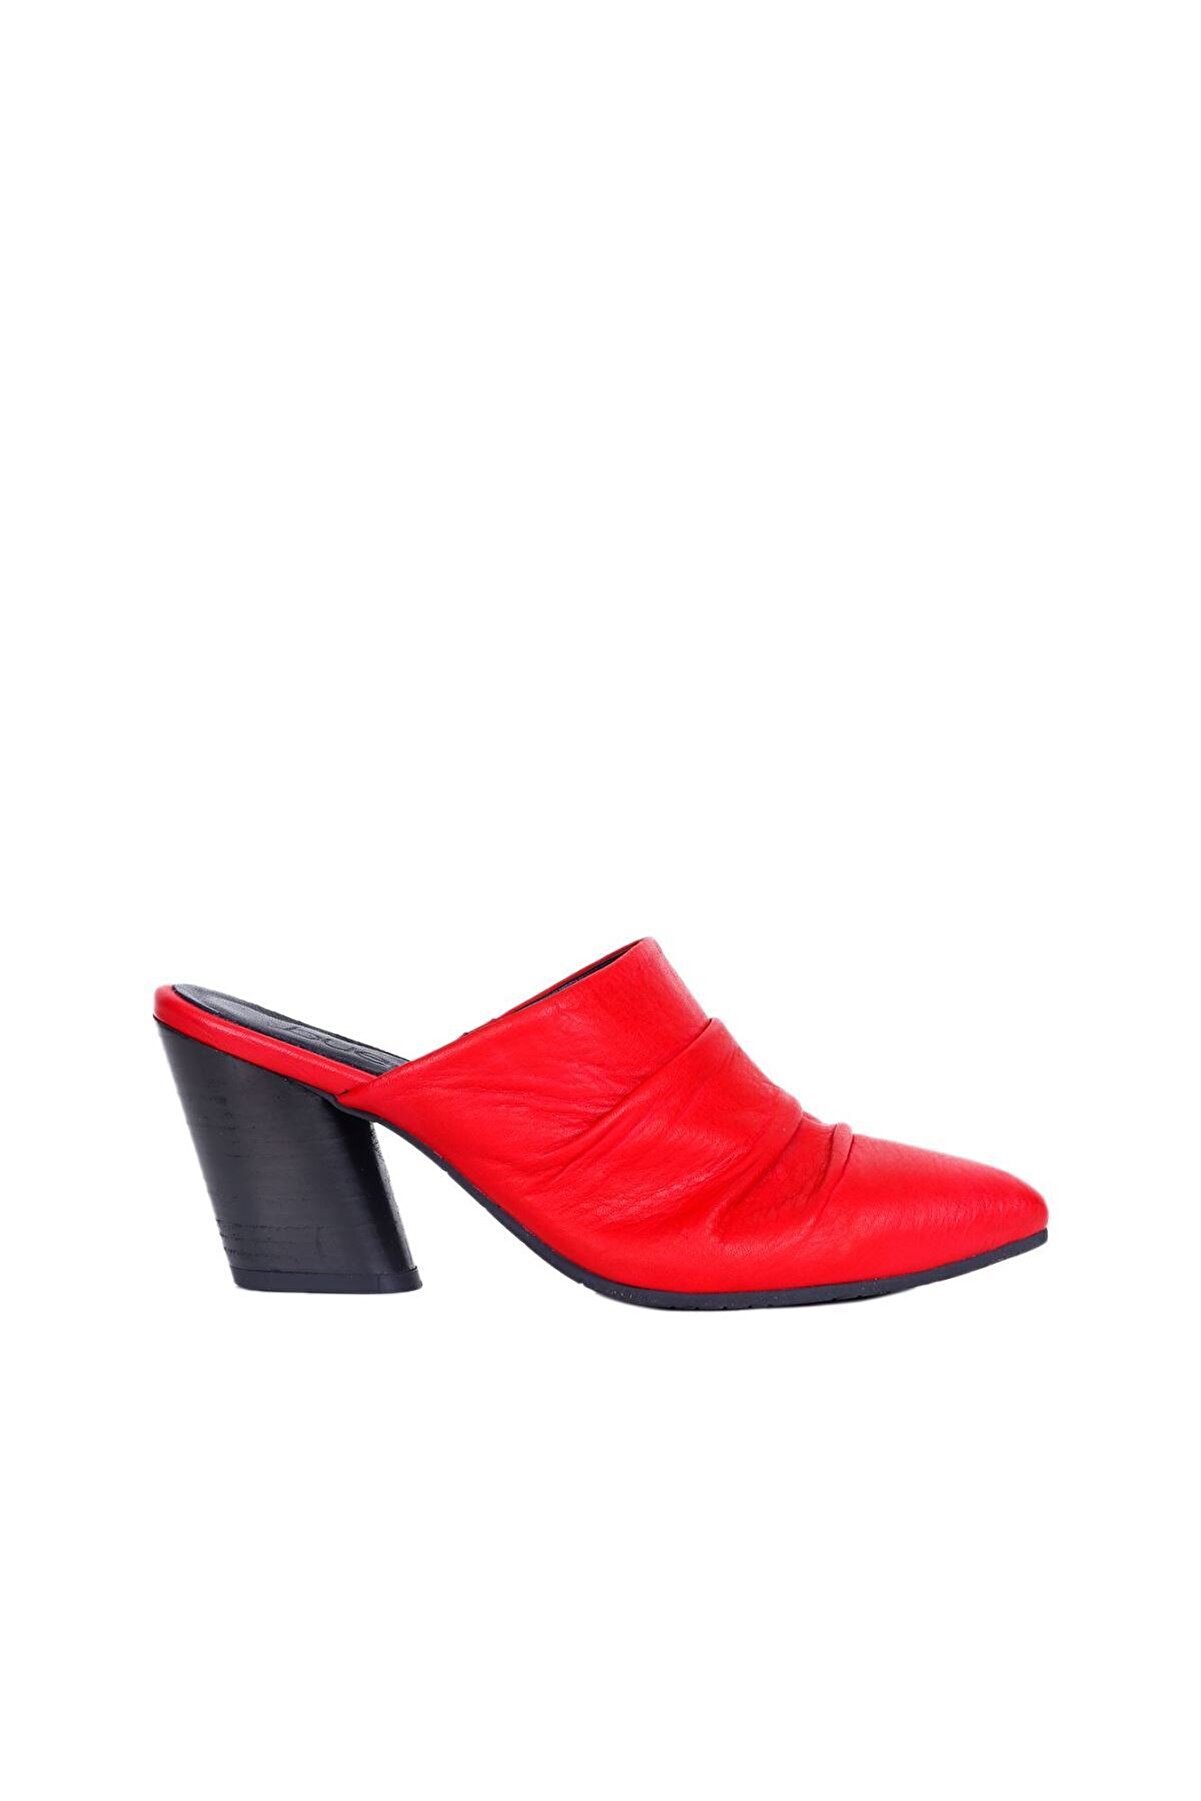 Bueno Shoes Kırmızı Deri Kadın Topuklu Terlik